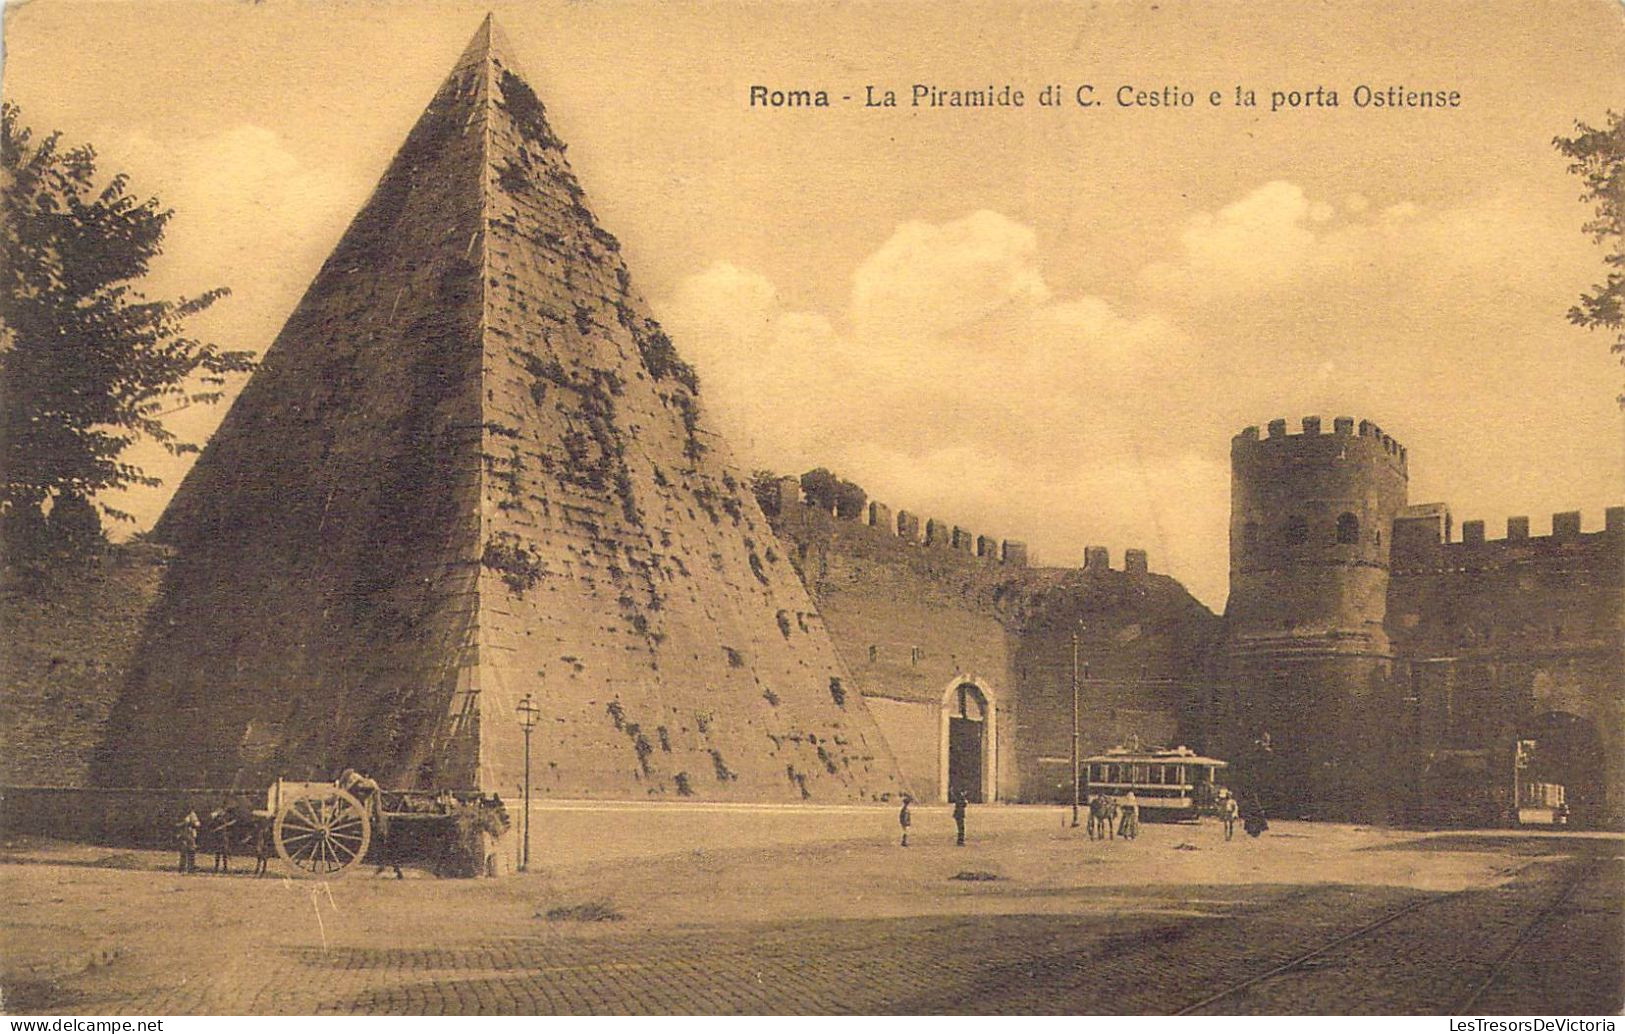 ITALIE - Roma - La Piramide Di C. Cestio E La Porta Ostiense - Carte Postale Ancienne - Andere Monumente & Gebäude